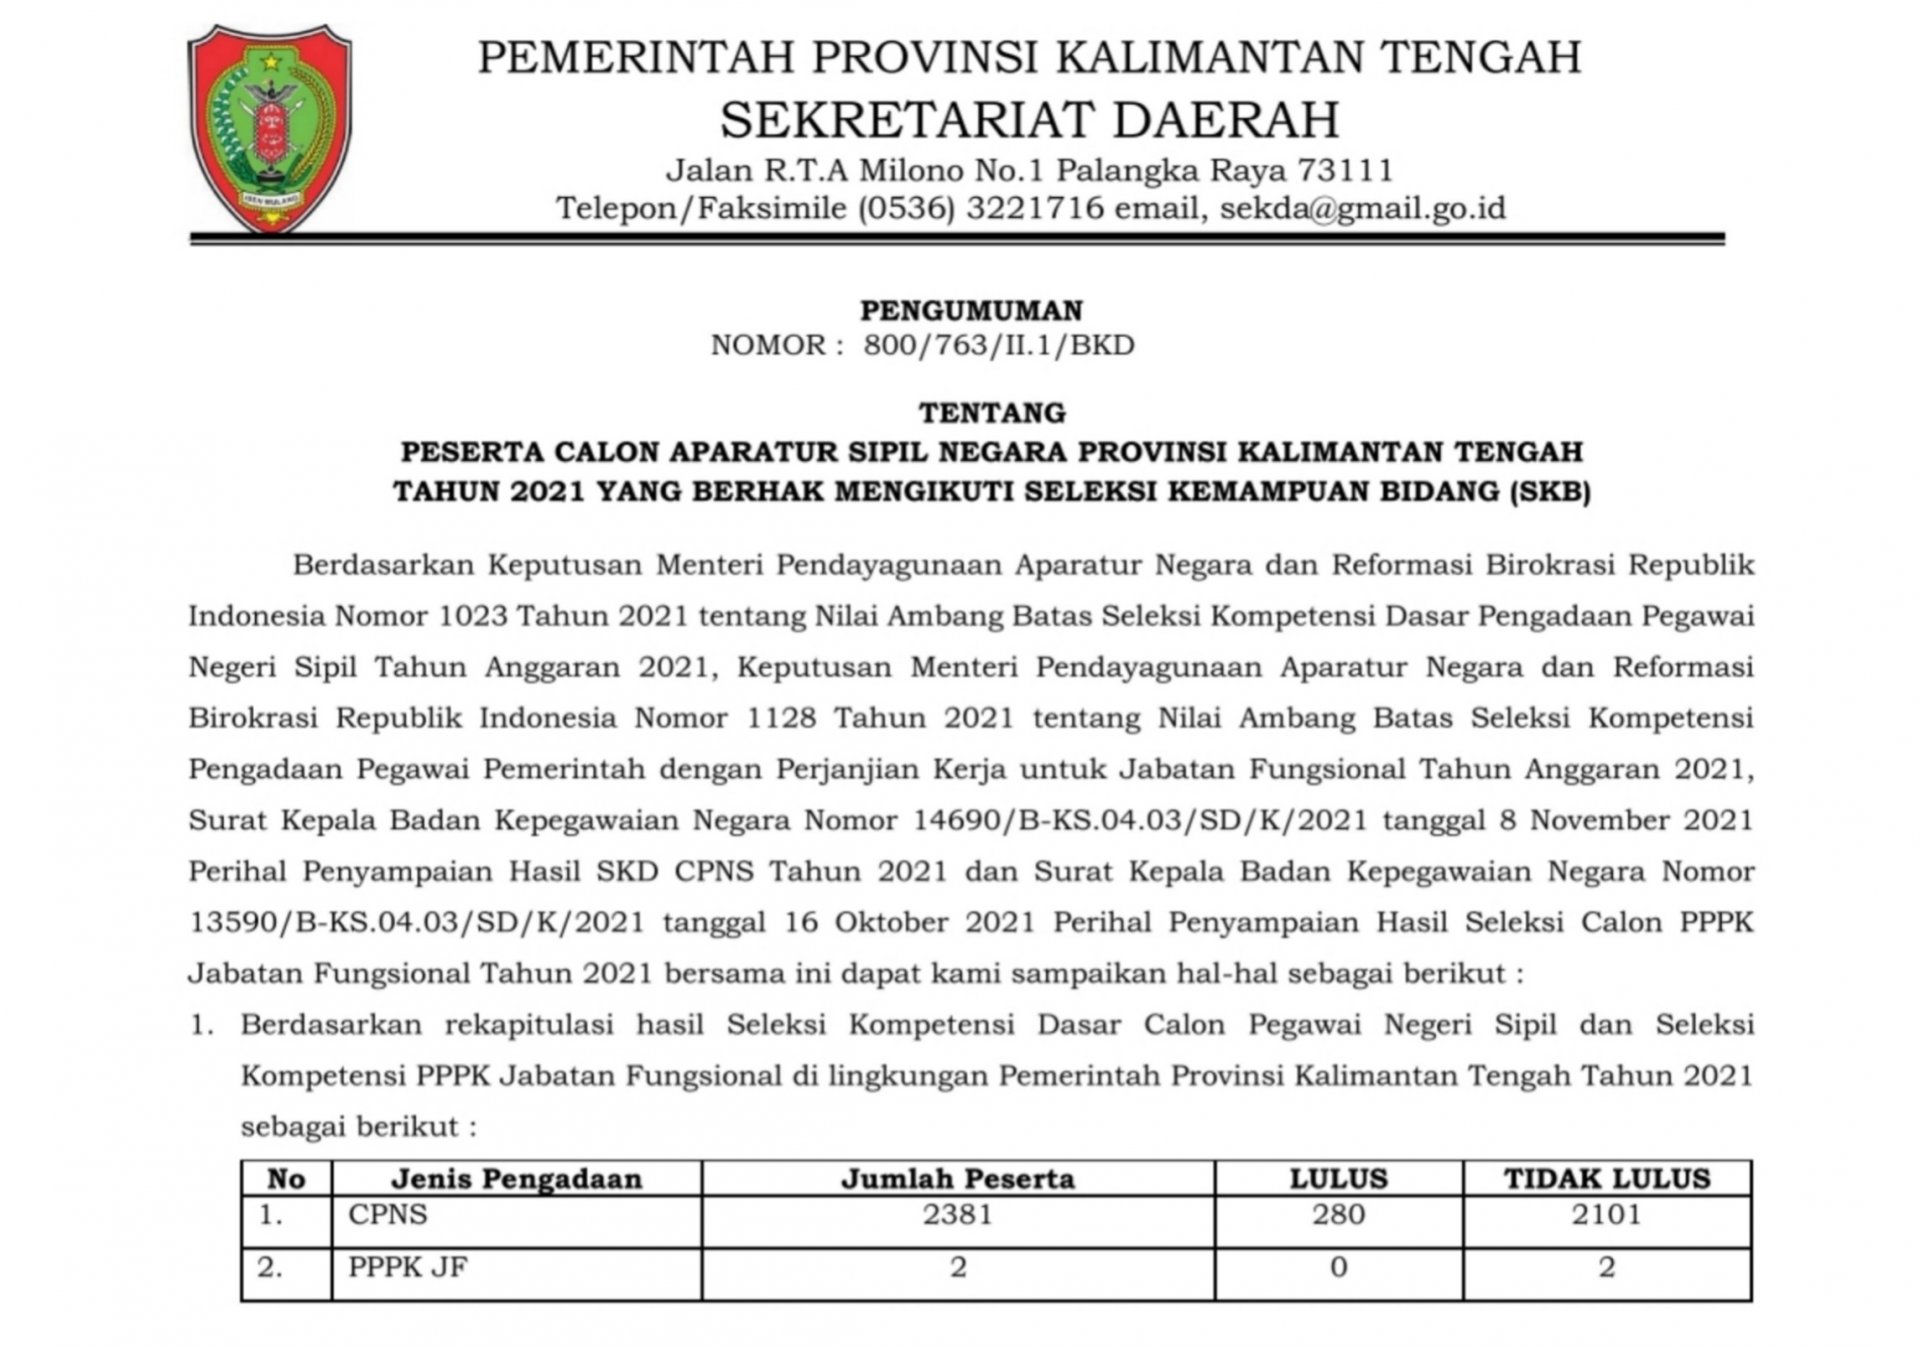 Pengumuman Peserta SKB CPNS Pemerintah Provinsi Kalimantan Tengah Tahun 2021